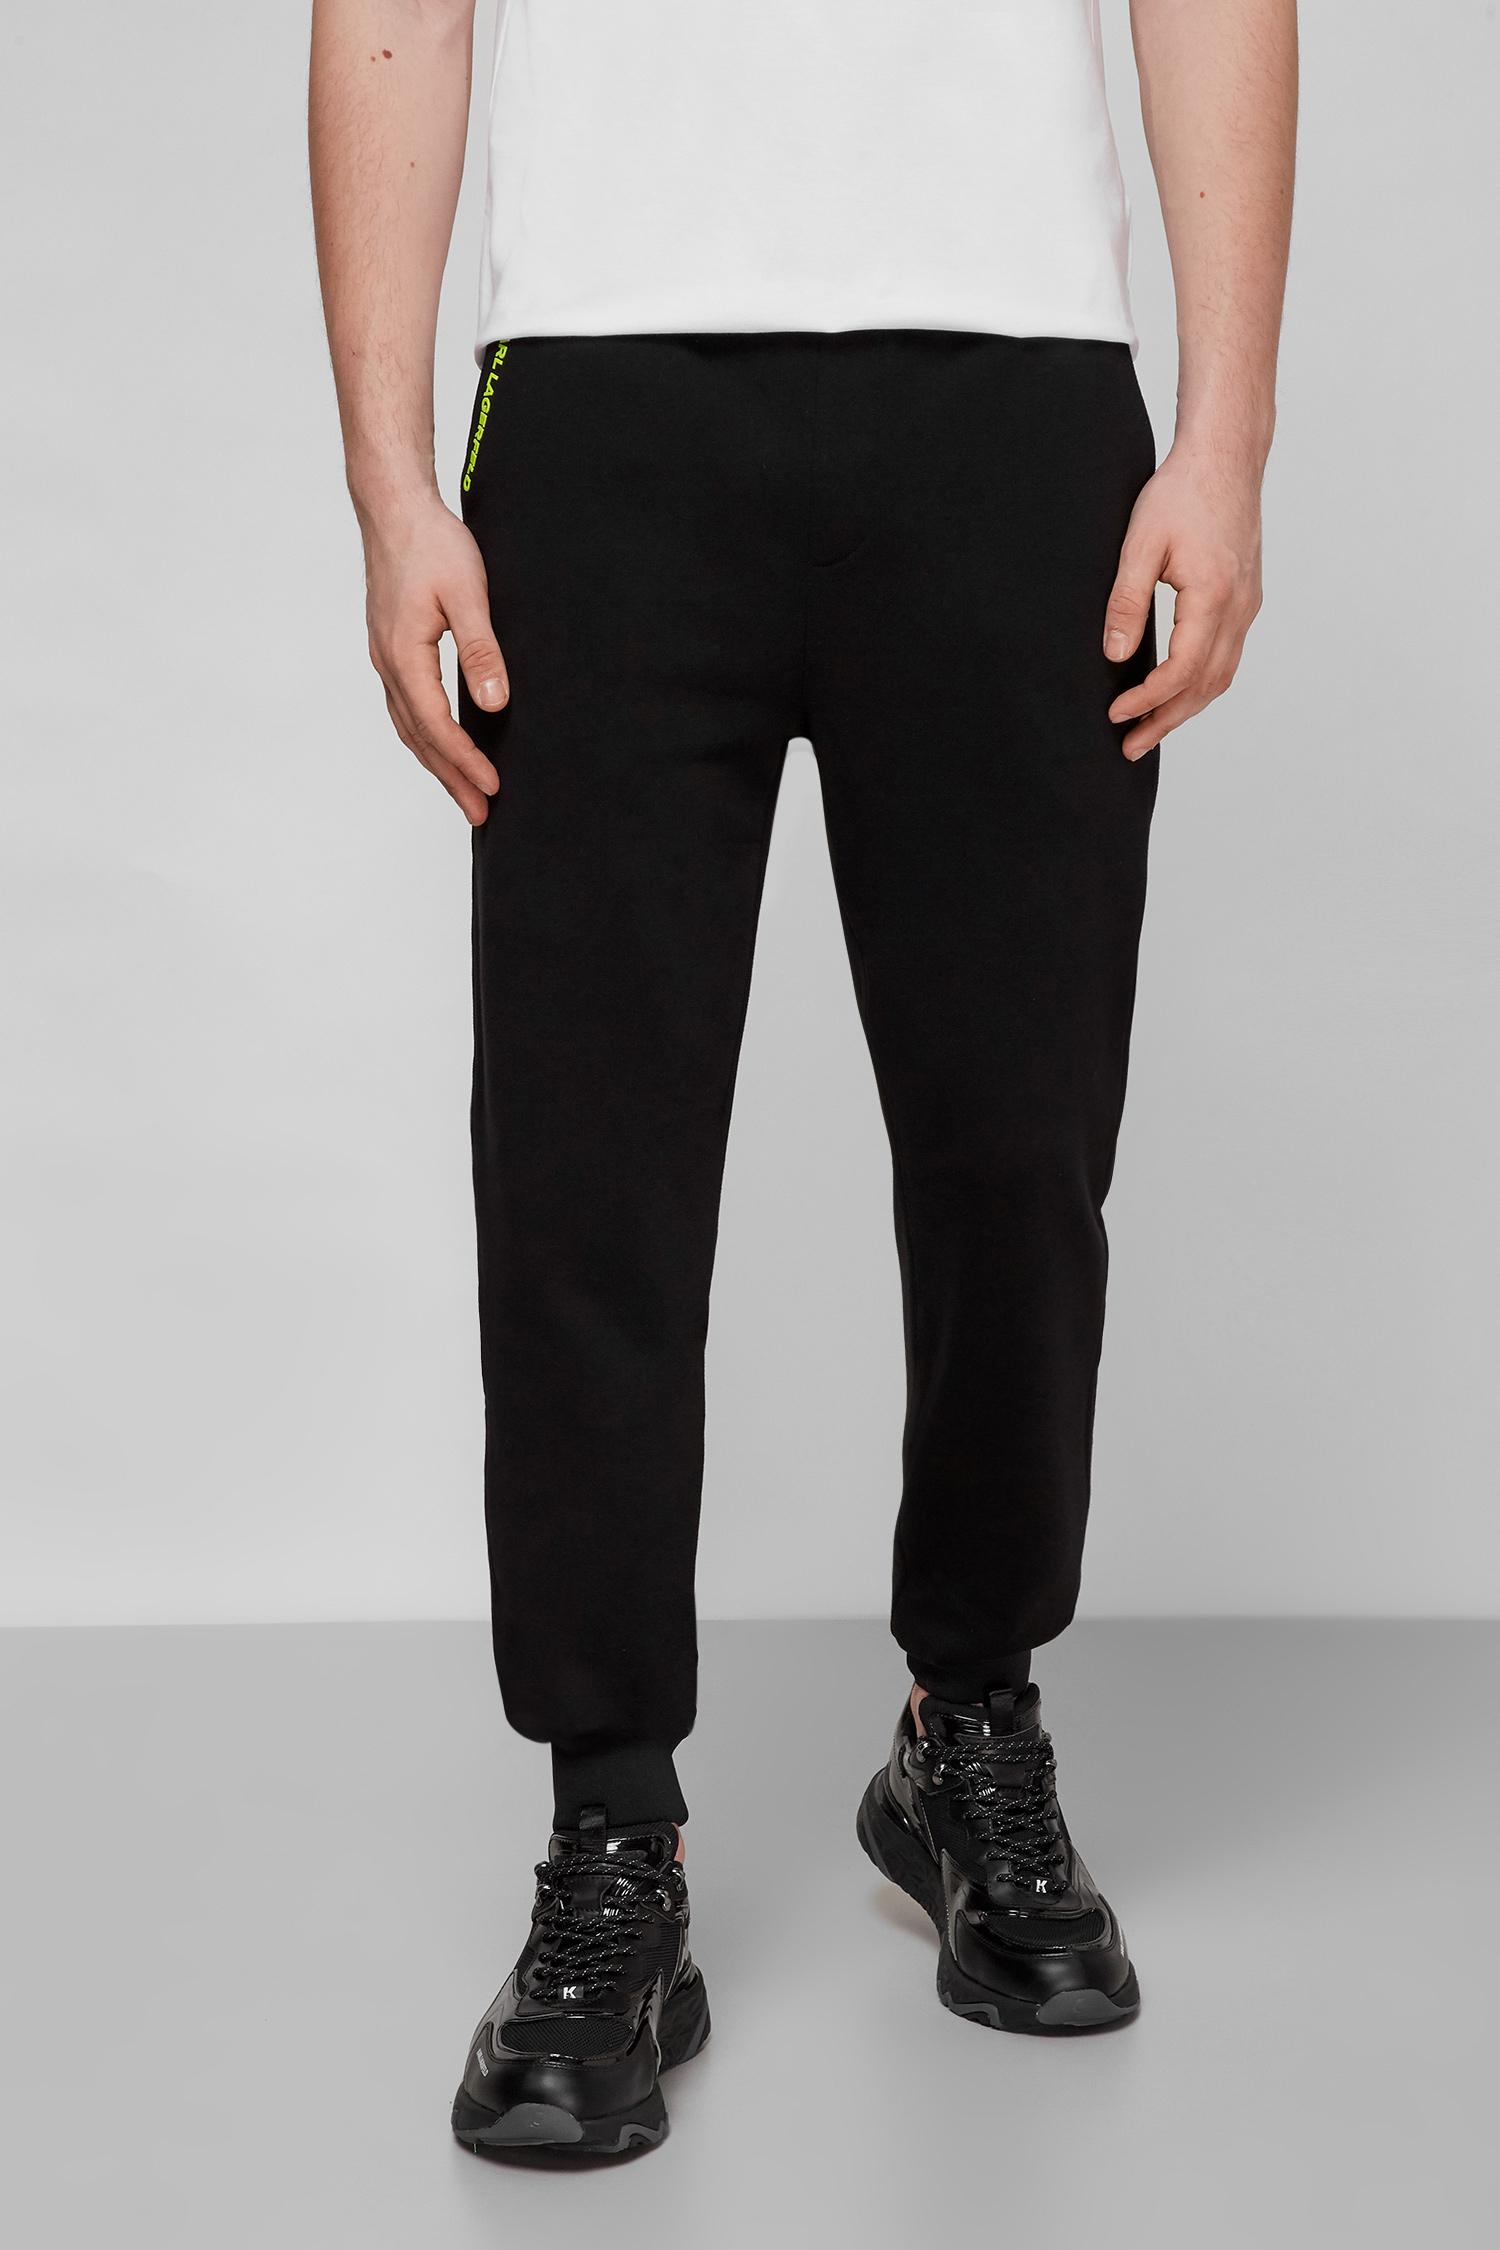 Черные спортивные брюки для парней Karl Lagerfeld 521900.705423;120